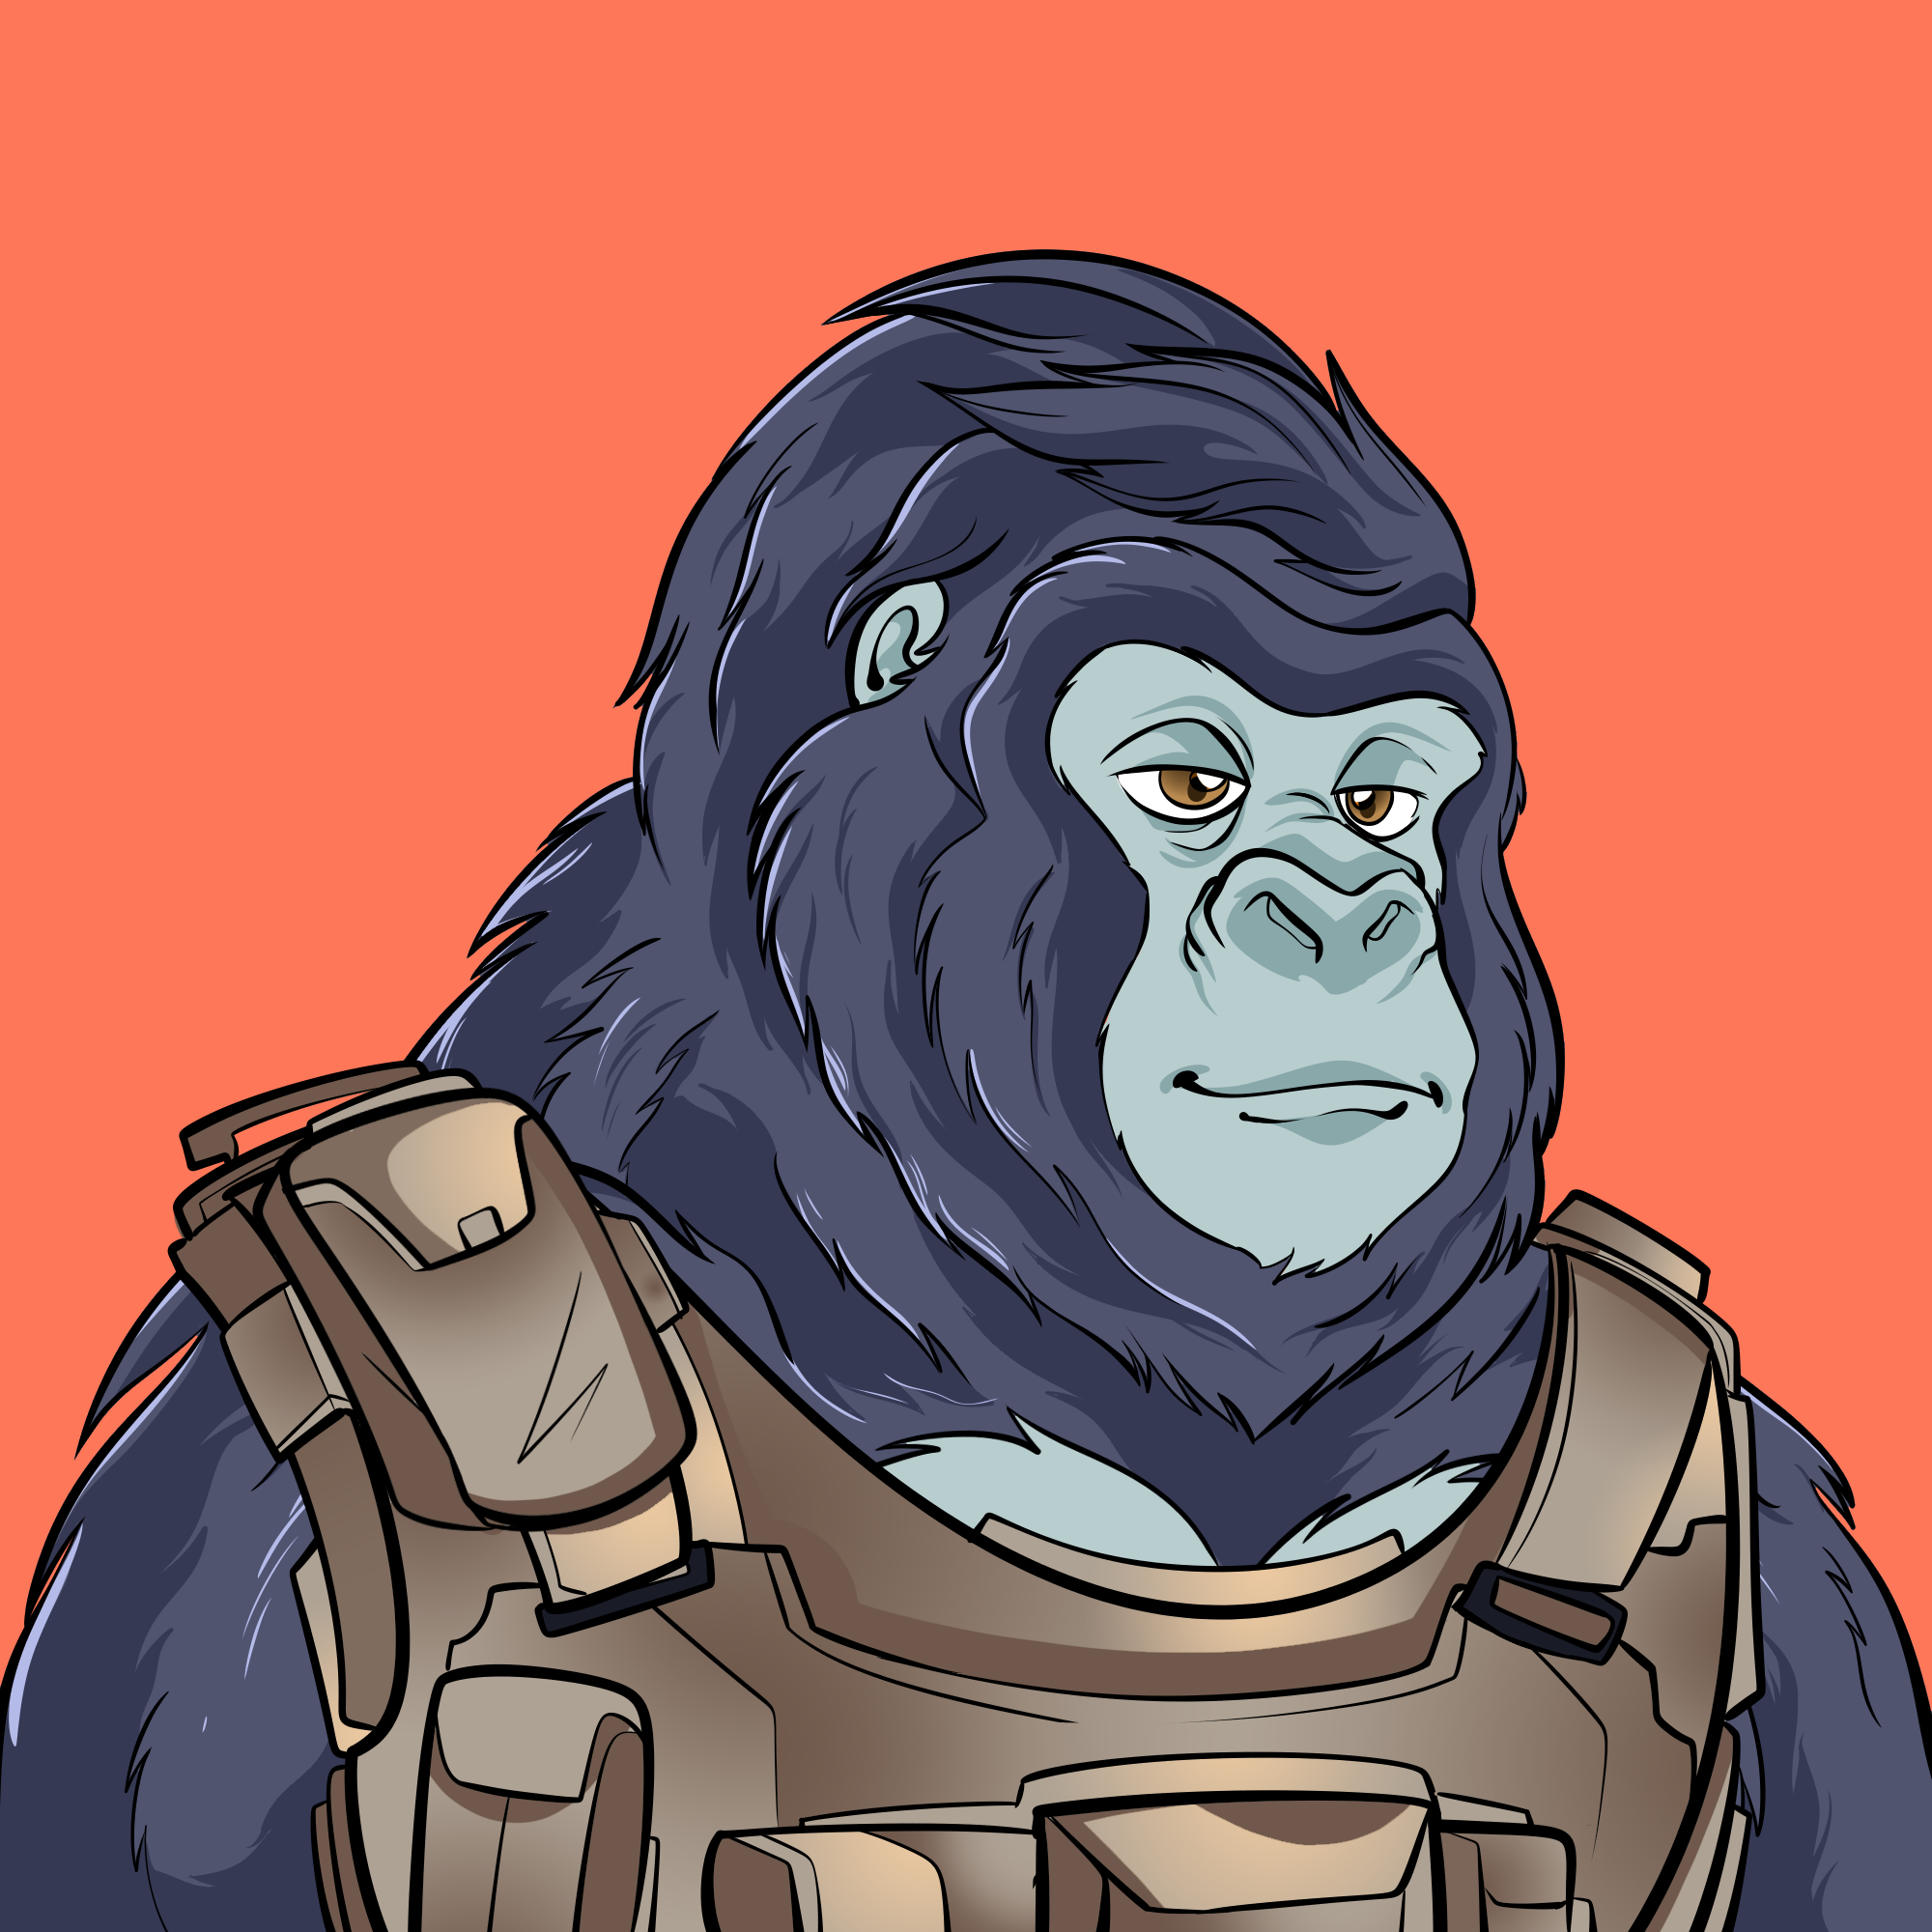 Ape#5952